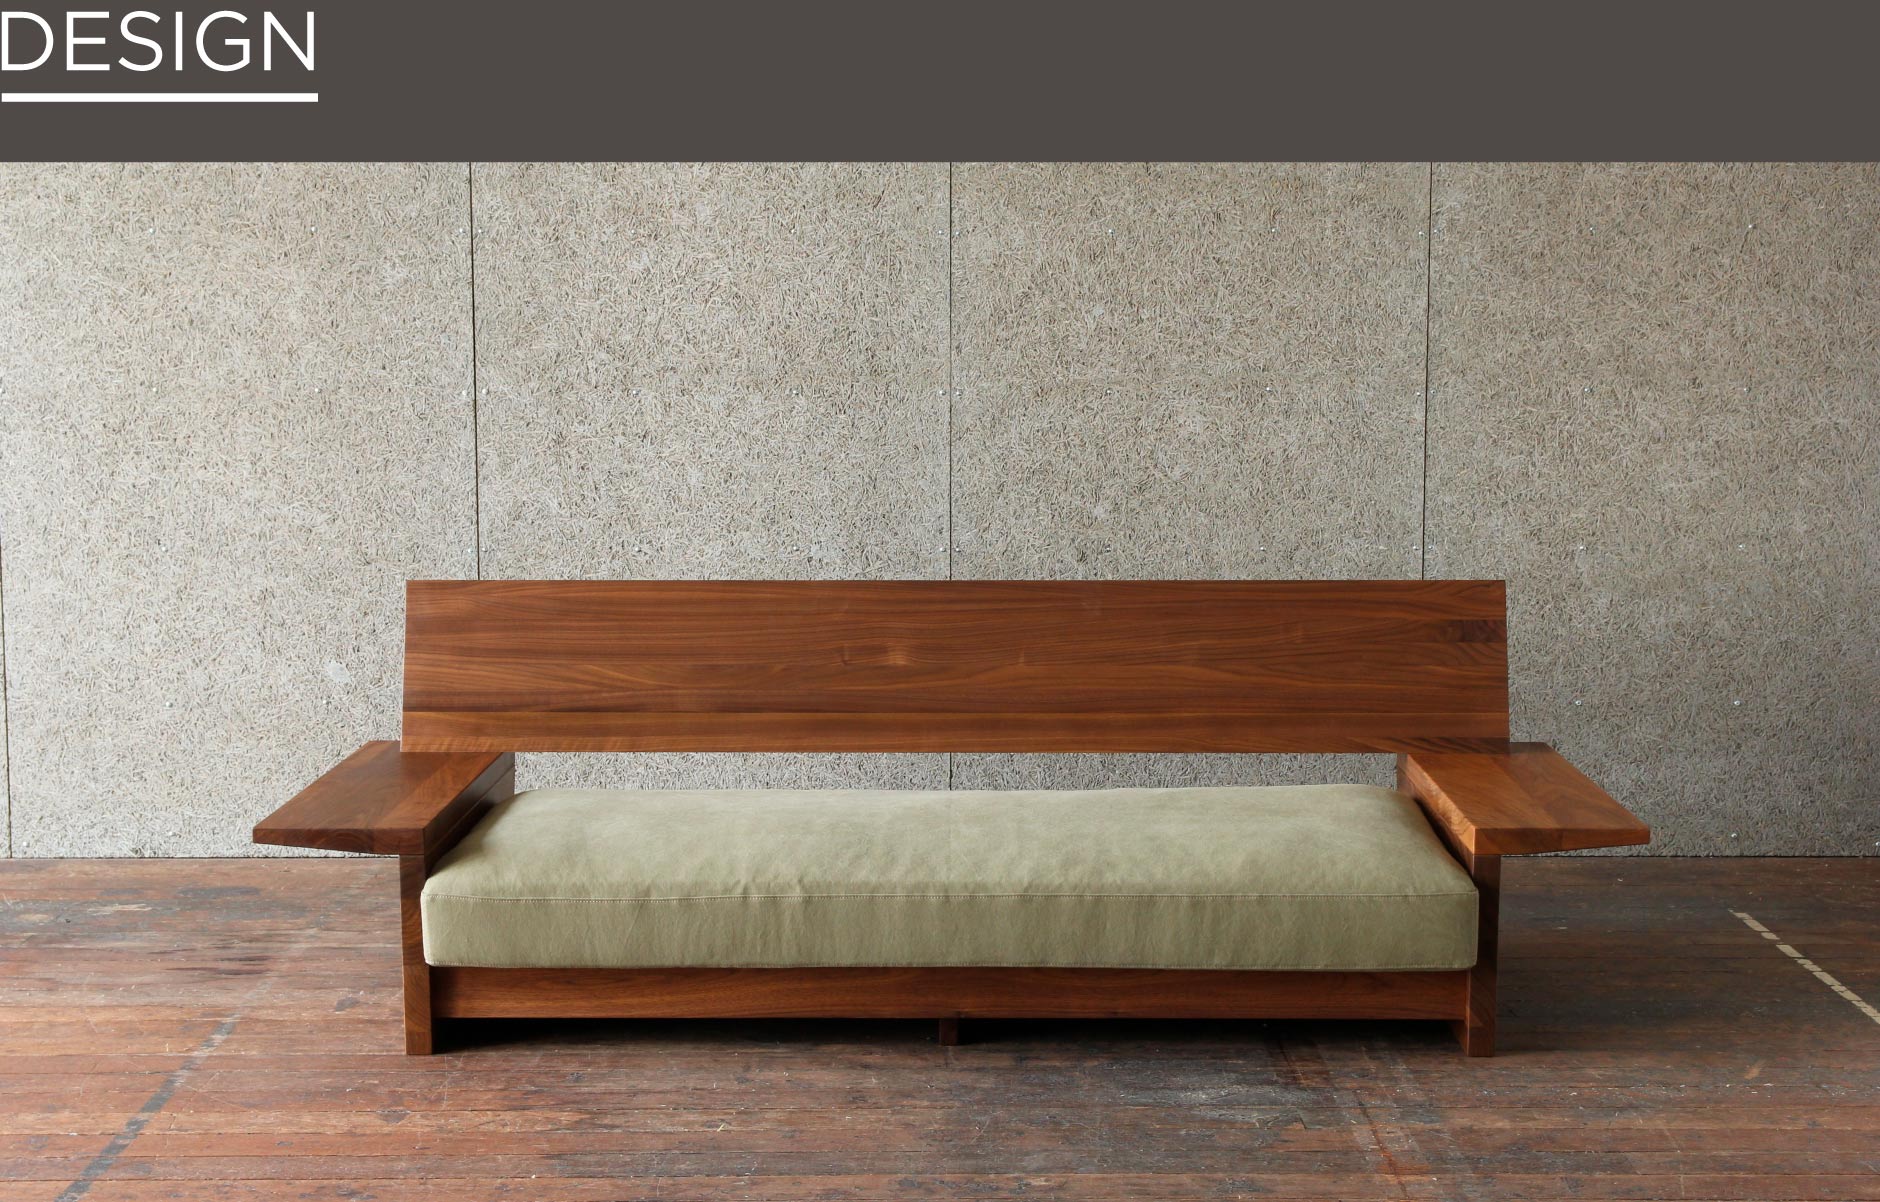 名古屋栄にある無垢家具を扱うSOLID。店内の中でも使う天然木の厚みがあり、存在感を十分に感じられる木製ソファ